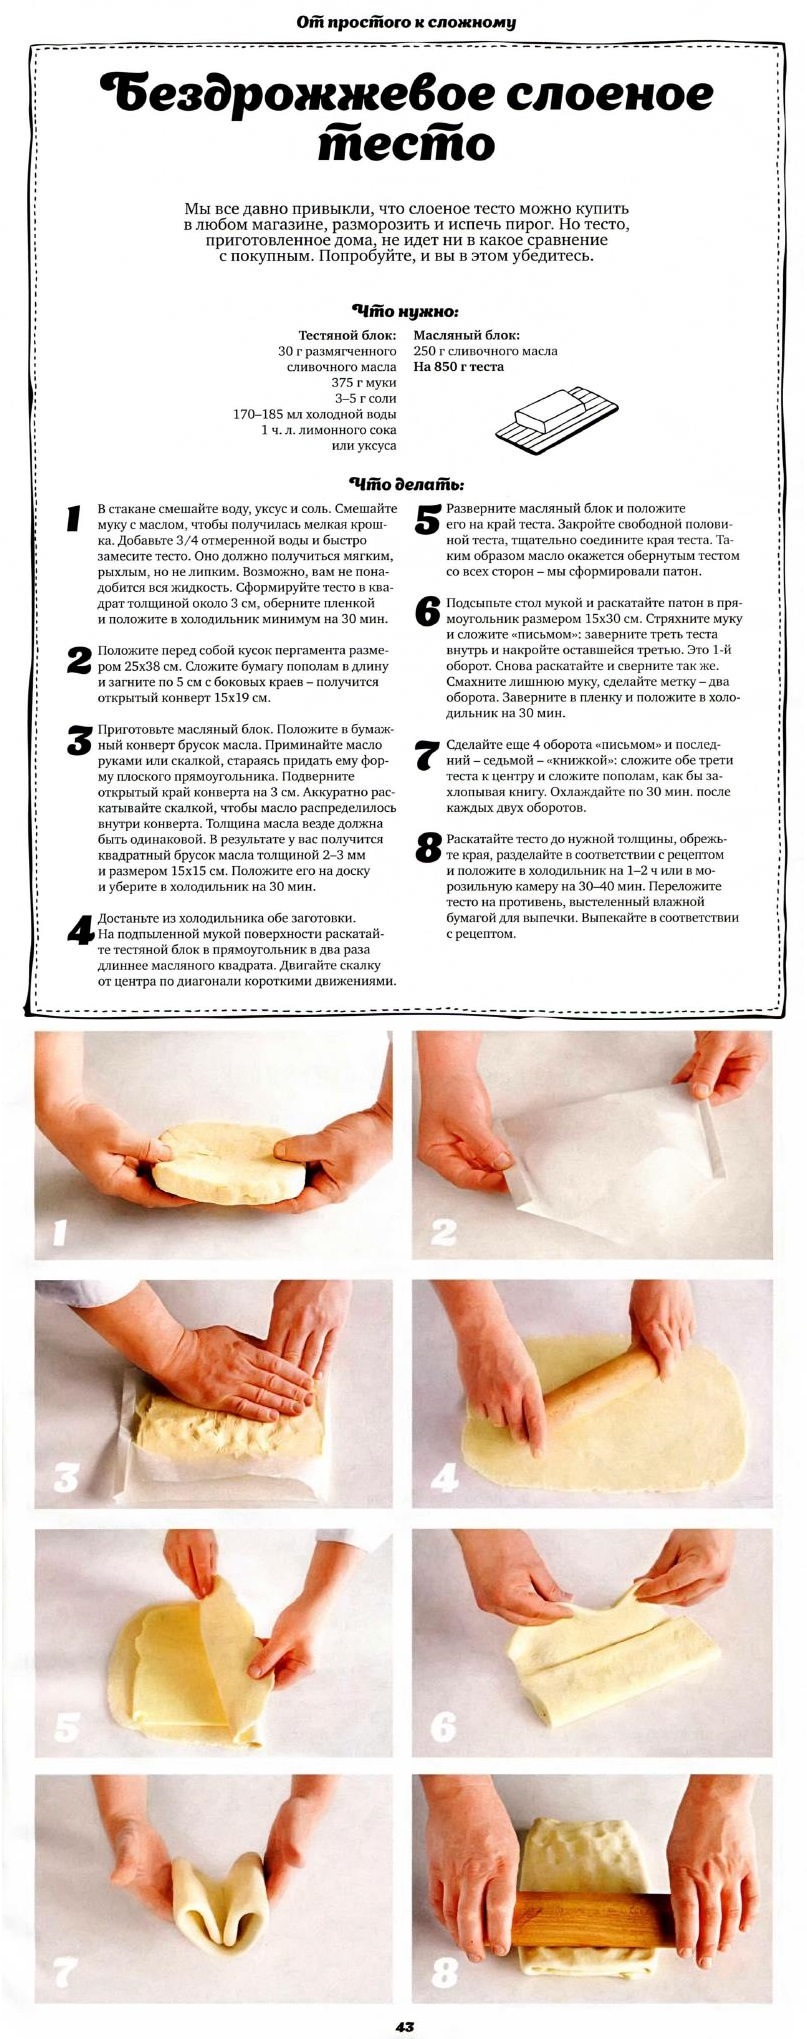 Дрожжевое слоеное тесто в домашних условиях быстрого. Как сделать слоёное тесто бездрожжевое. Приготовление слоеного теста пошагово. Приготовление дрожжевого слоеного теста. Рецептура слоеного теста.